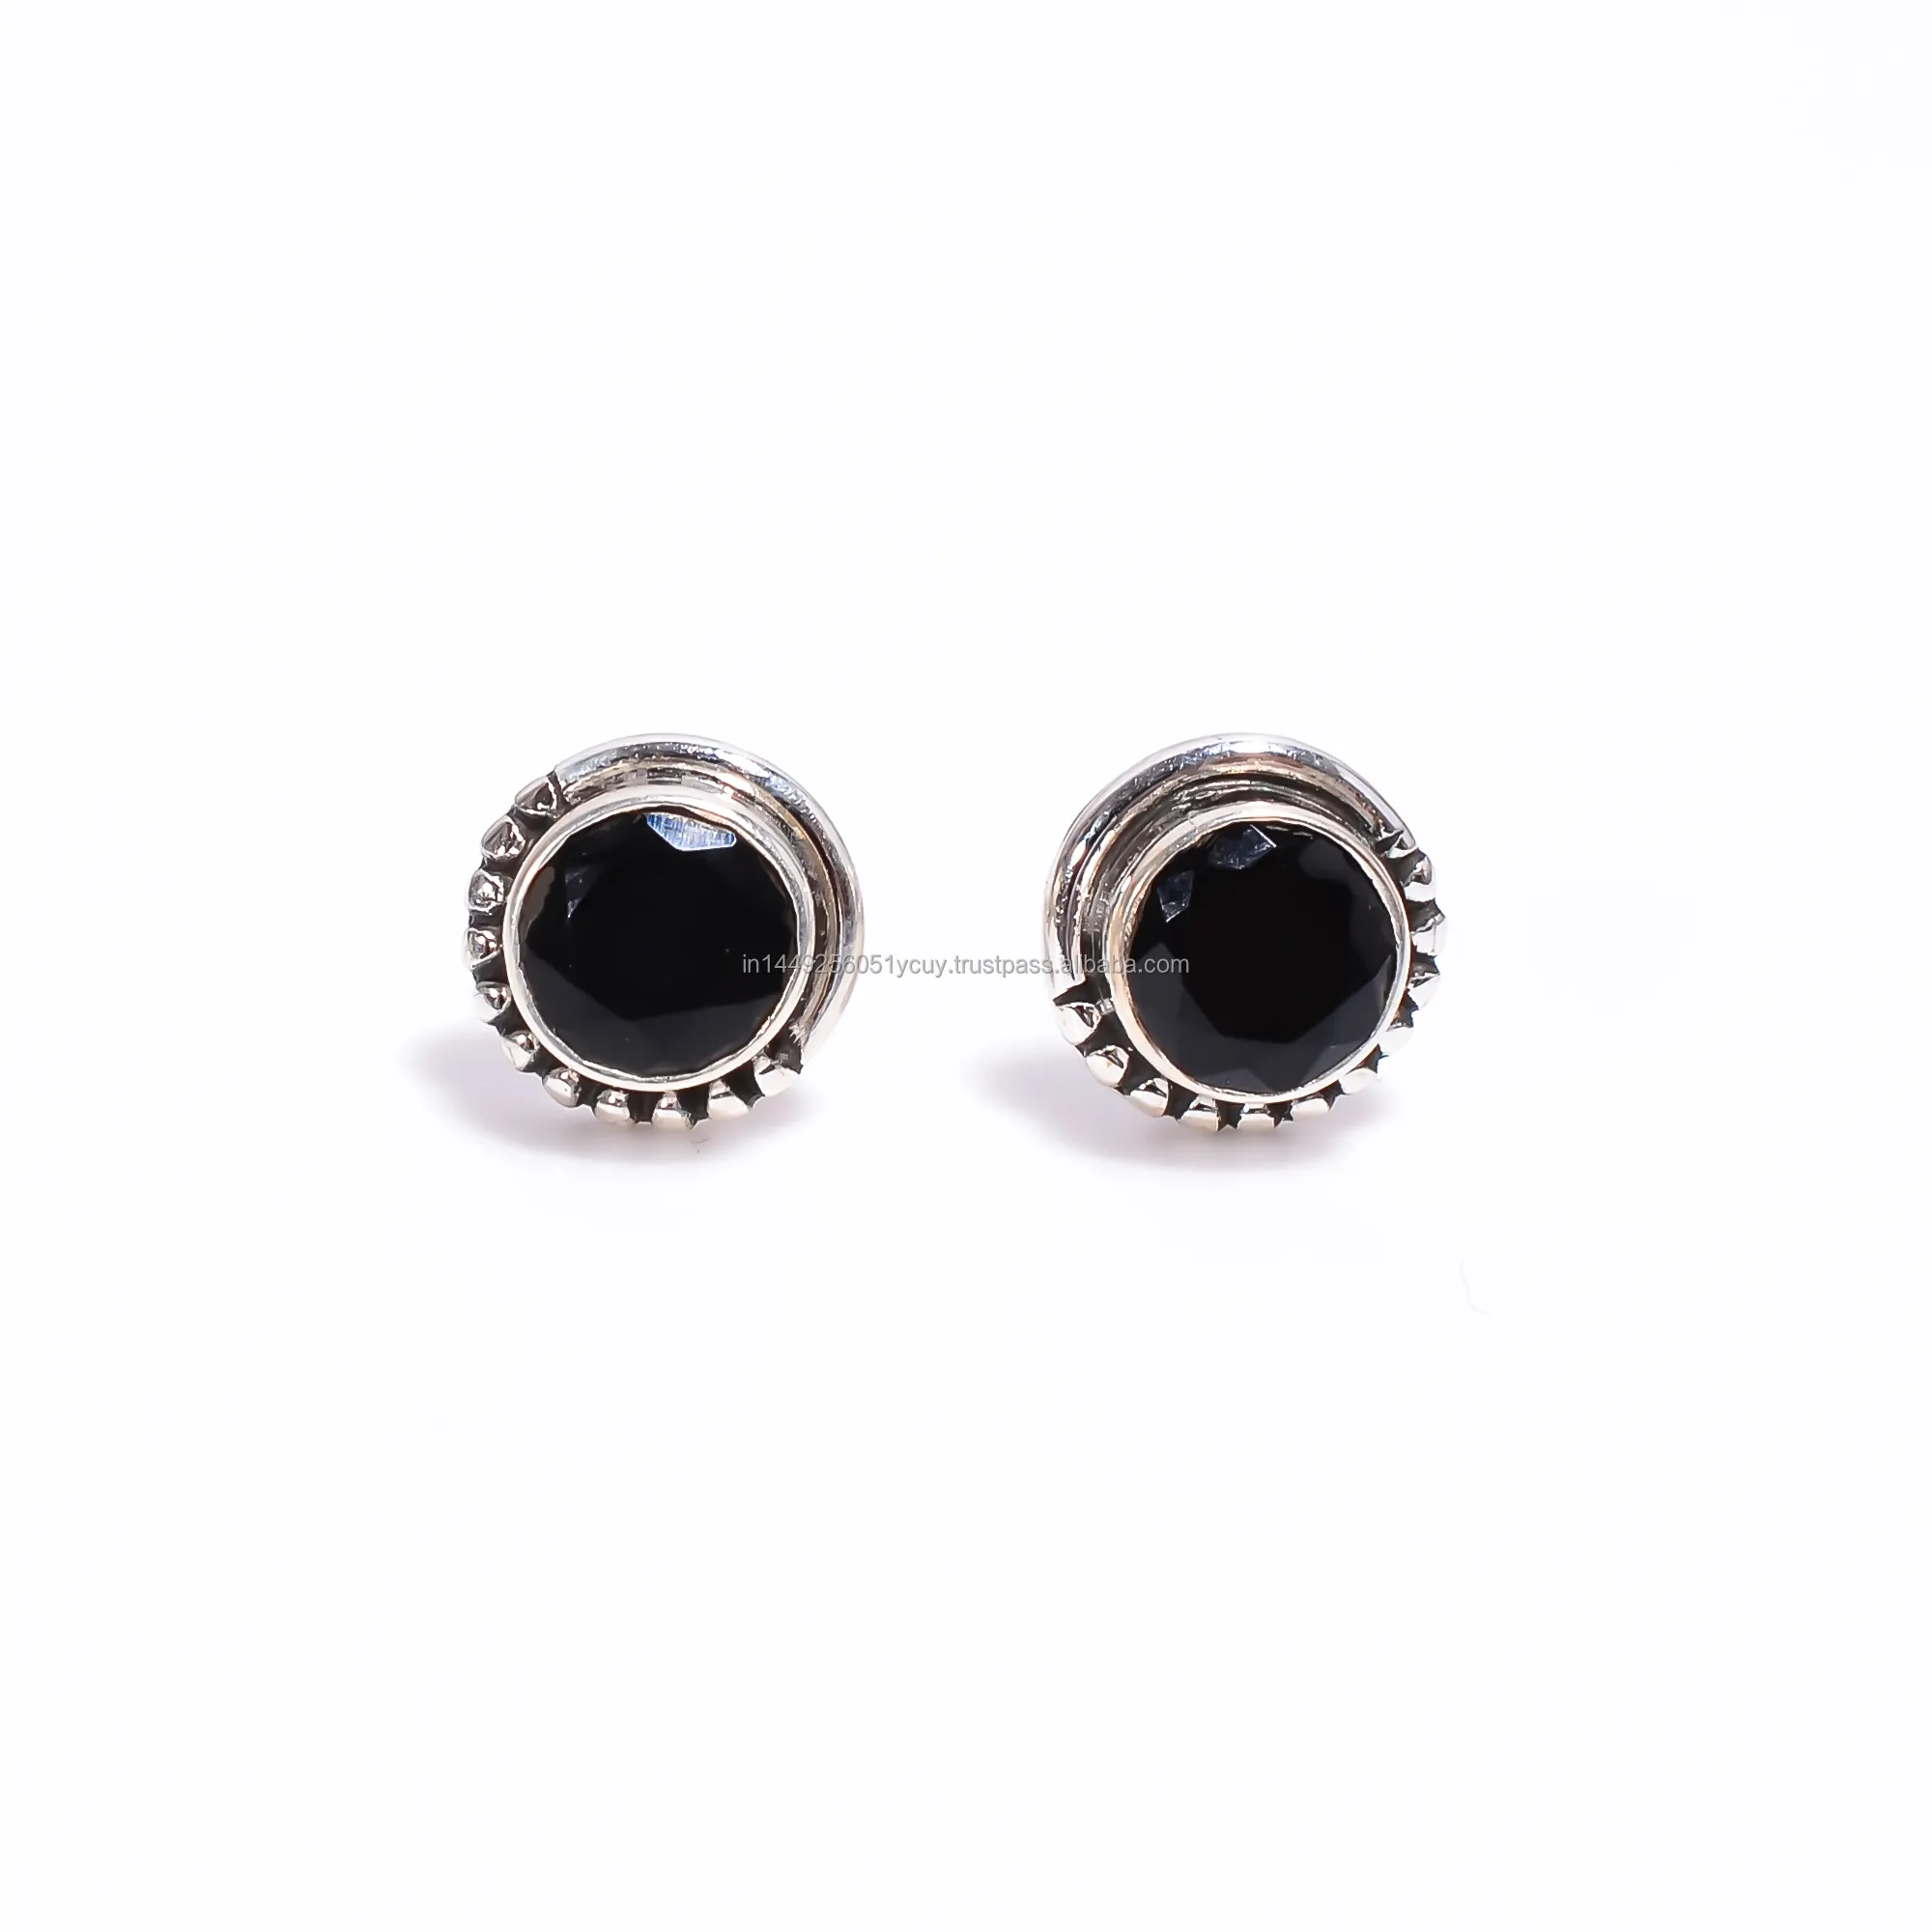 Vintage noir spinelle forme ronde boucles d'oreilles bijoux faits à la main 925 boucles d'oreilles en argent Sterling cadeau pour elle